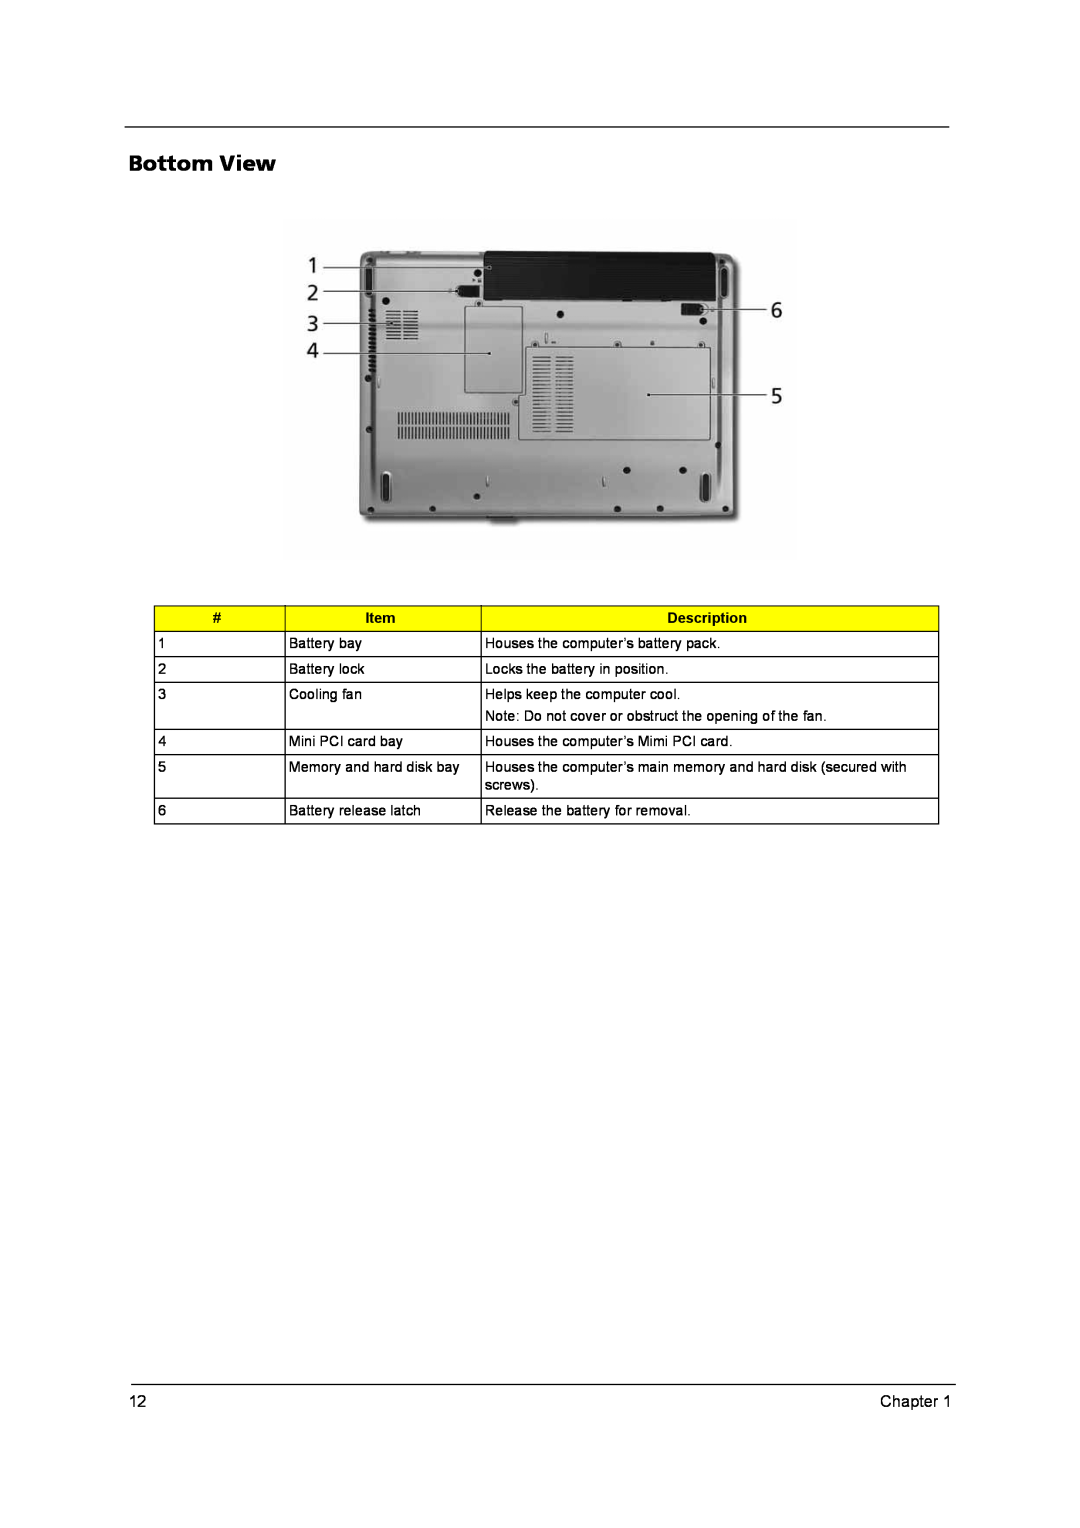 Acer KA100A, QD14TL0102, PLUTO MK6025GAS, MK4025GAS, N141I1-L05 (GLARE), N141C1-L02 (WXGA+) manual Bottom View, Description 